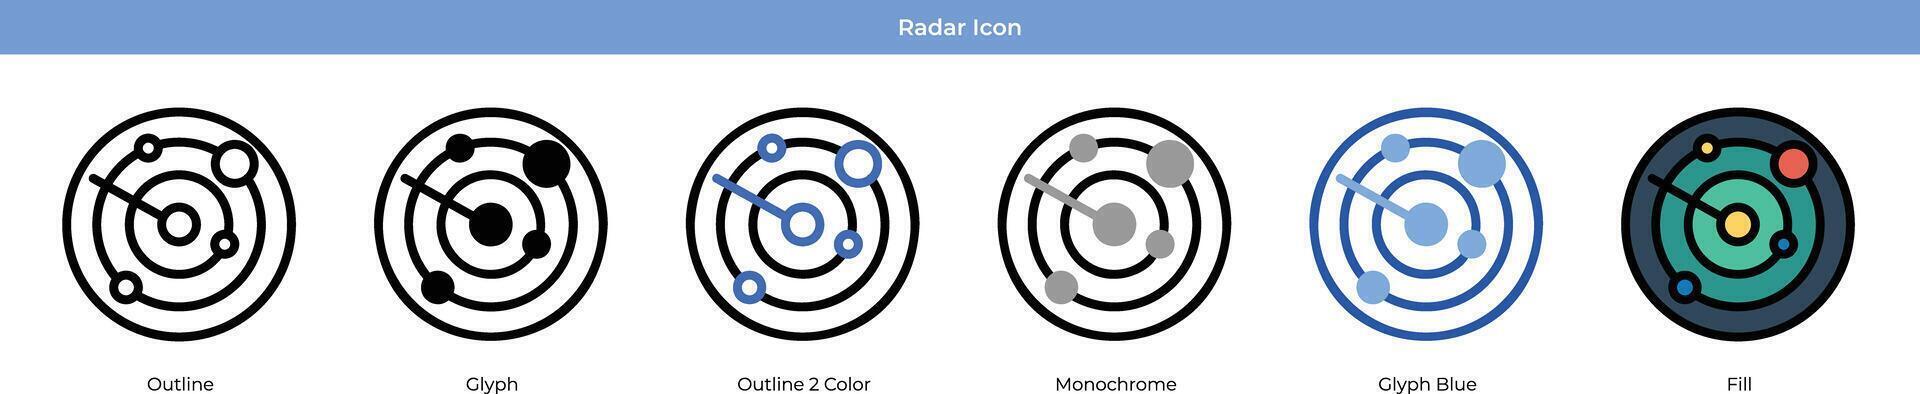 radar ikon uppsättning vektor